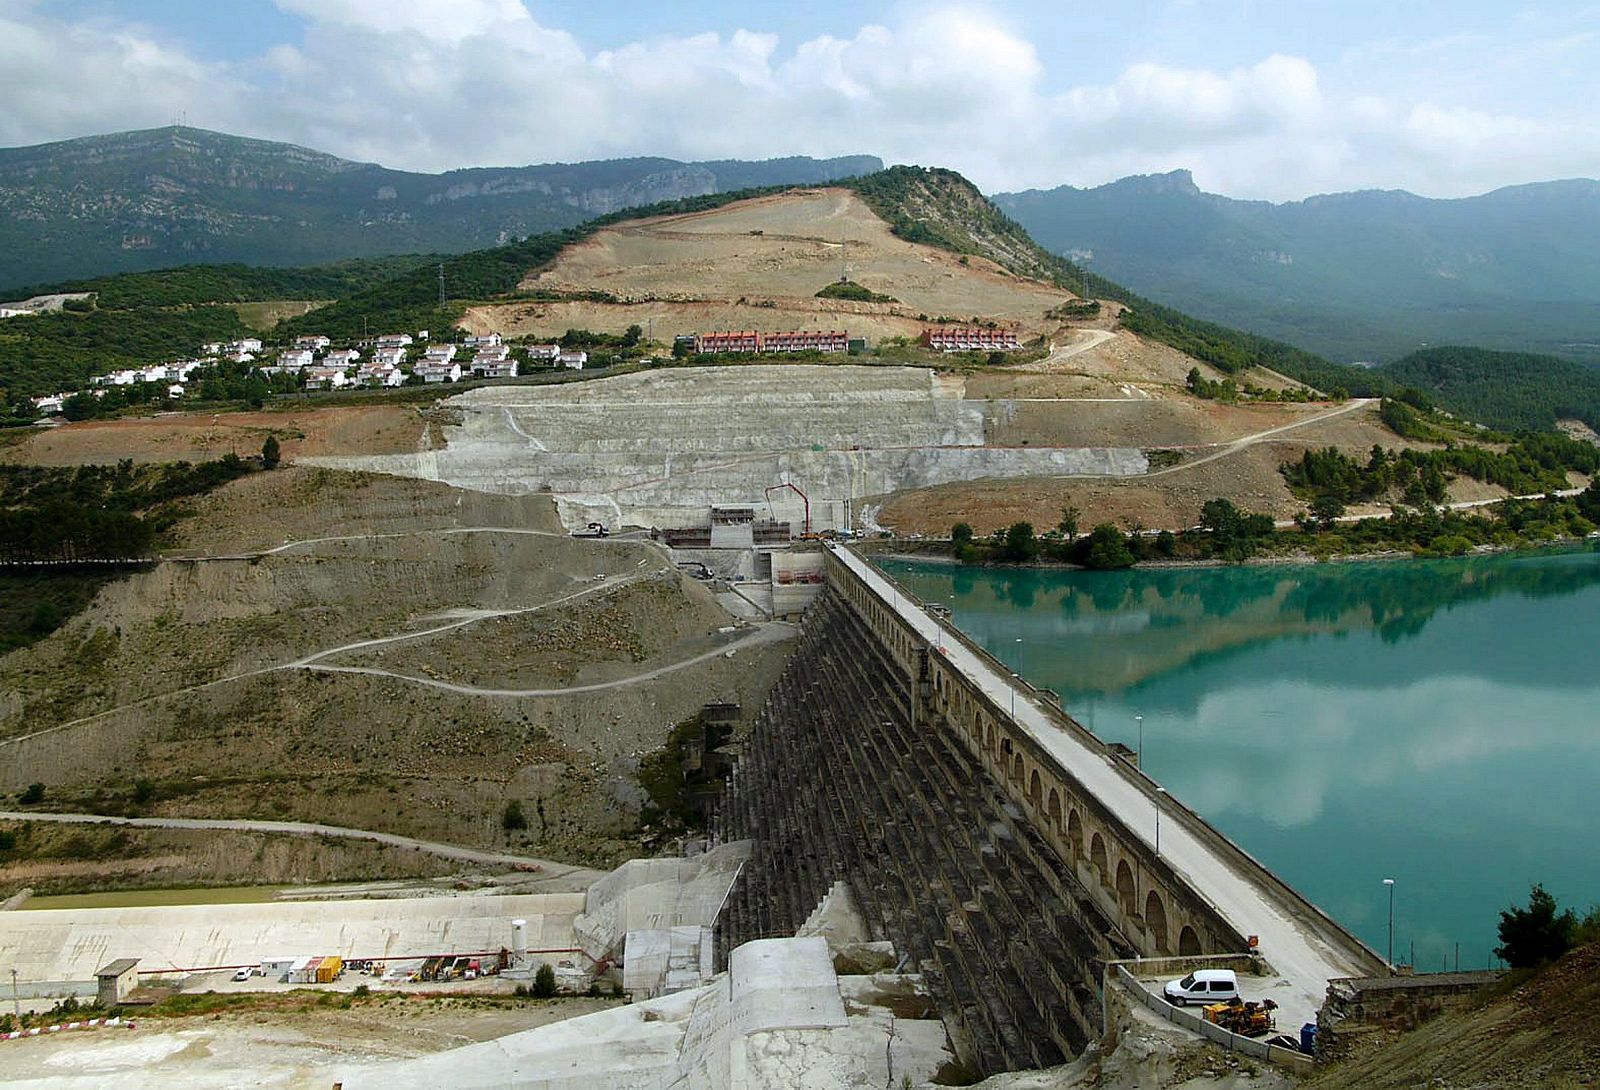 Fotografía cedida por la Confederación Hidrográfica del Ebro (CHE) que muestra las obras del recrecimiento del pantano de Yesa